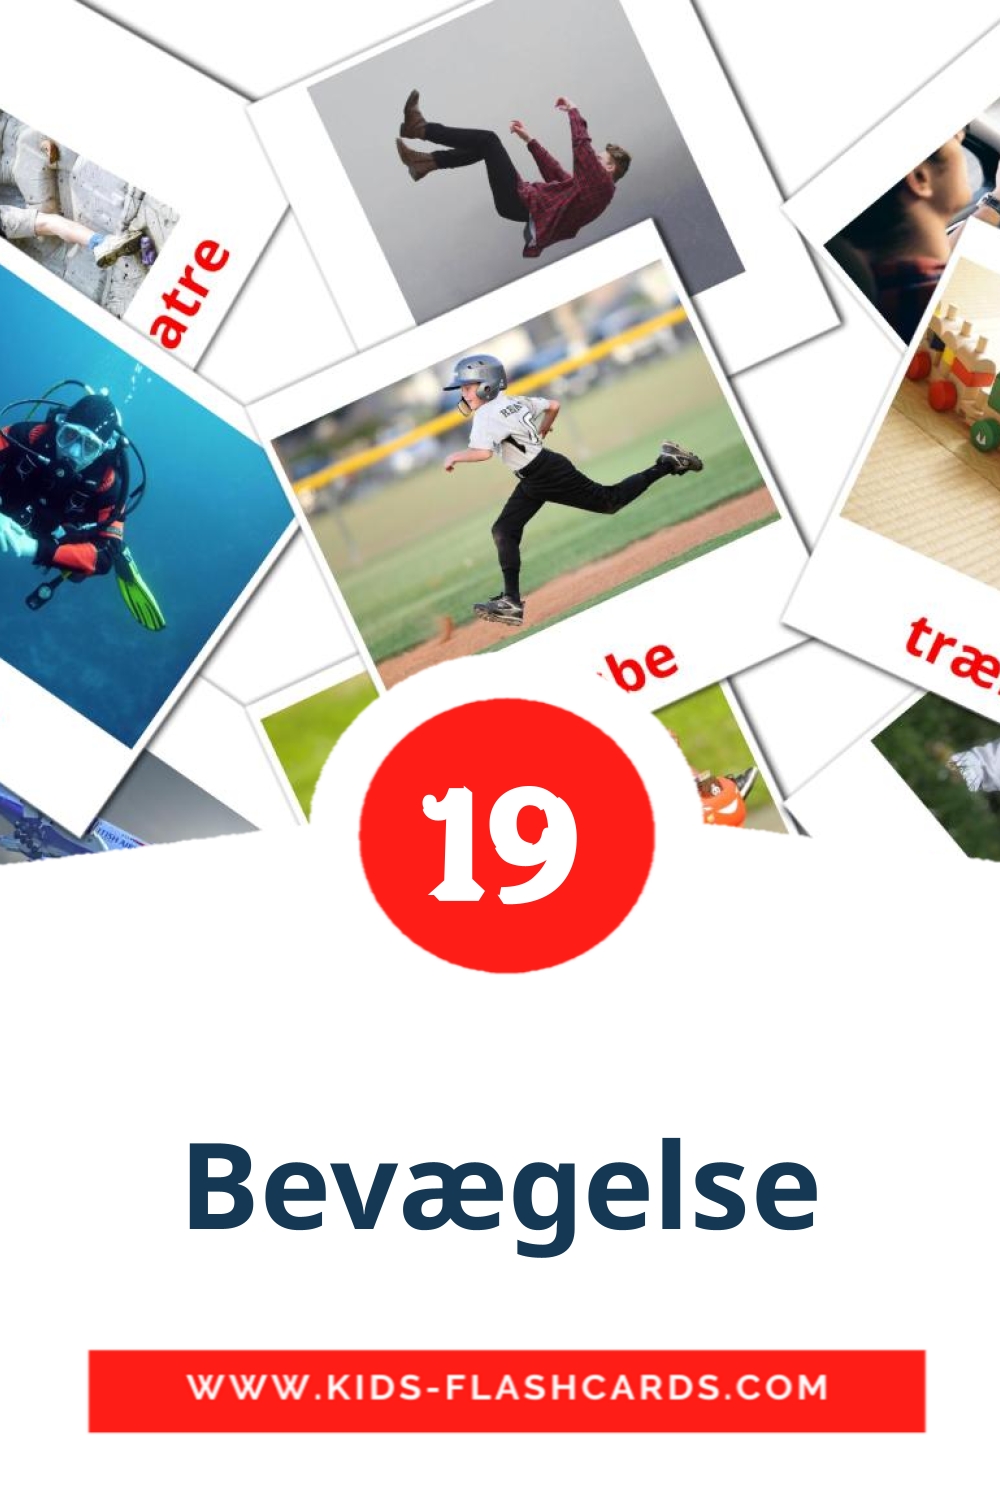 19 tarjetas didacticas de Bevægelse para el jardín de infancia en нидерландcком